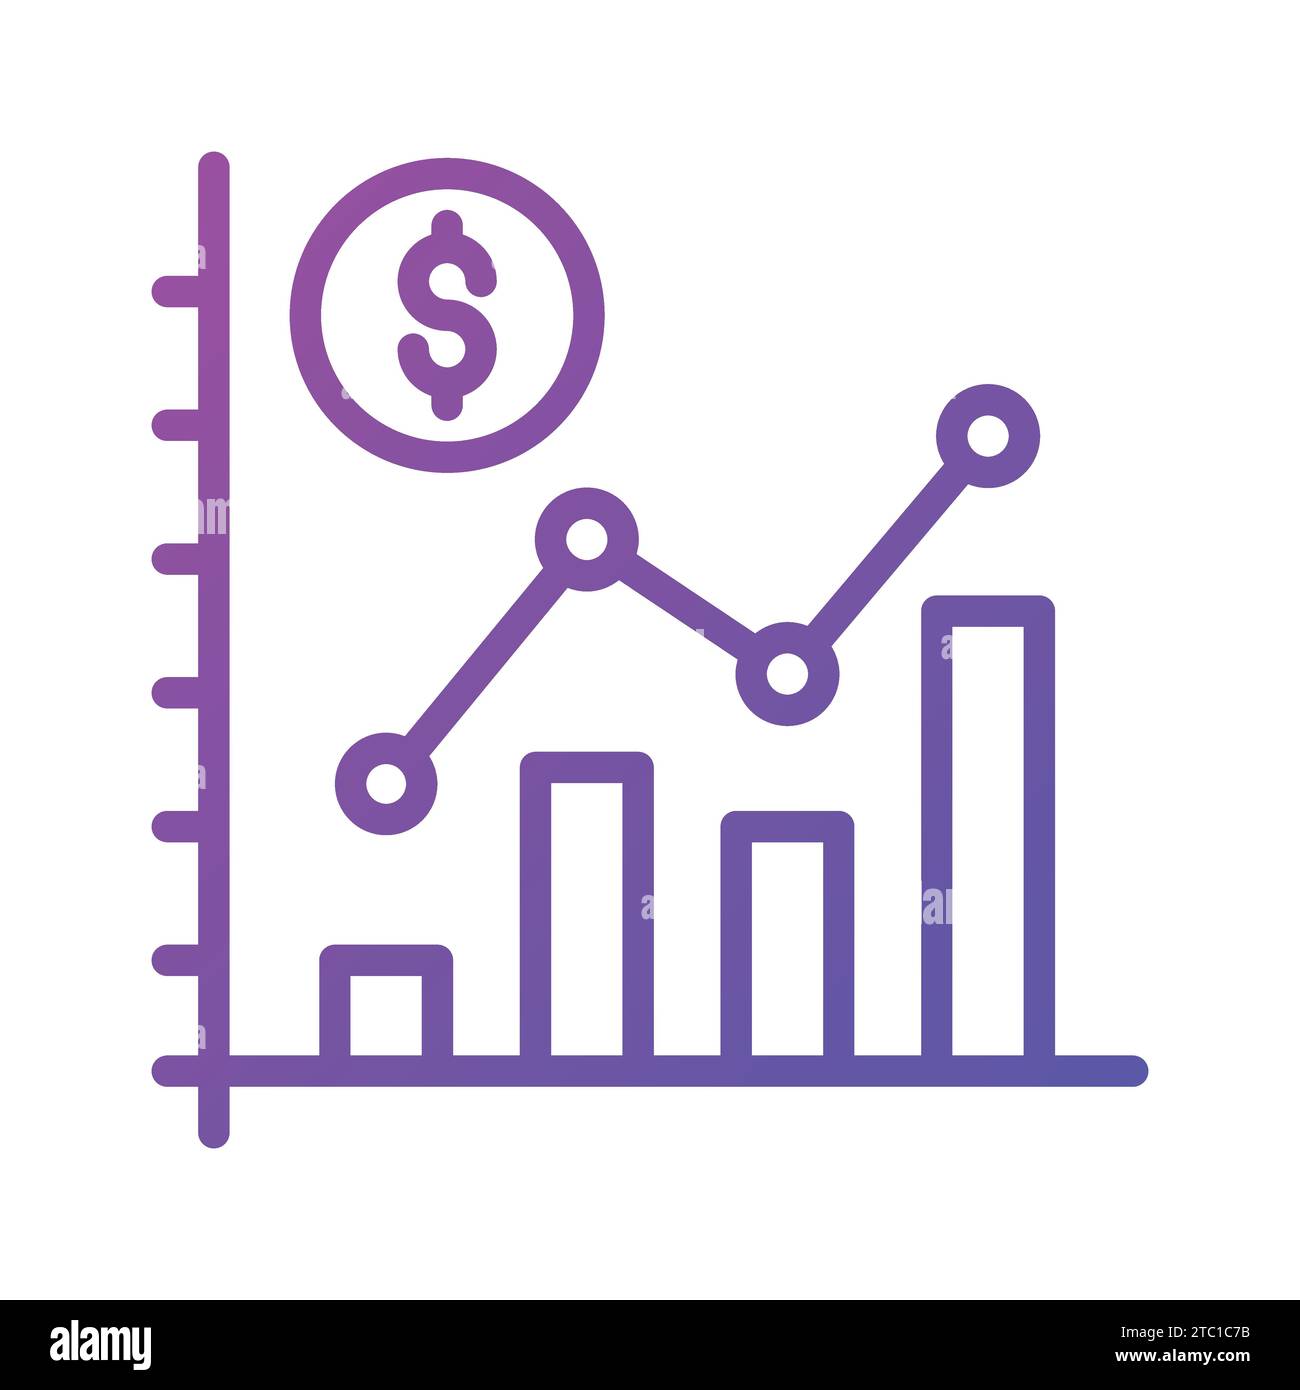 Grafico a barre e moneta in dollari che rappresentano l'analisi e l'interpretazione dei dati finanziari, vettore di analisi dei dati finanziari. Illustrazione Vettoriale